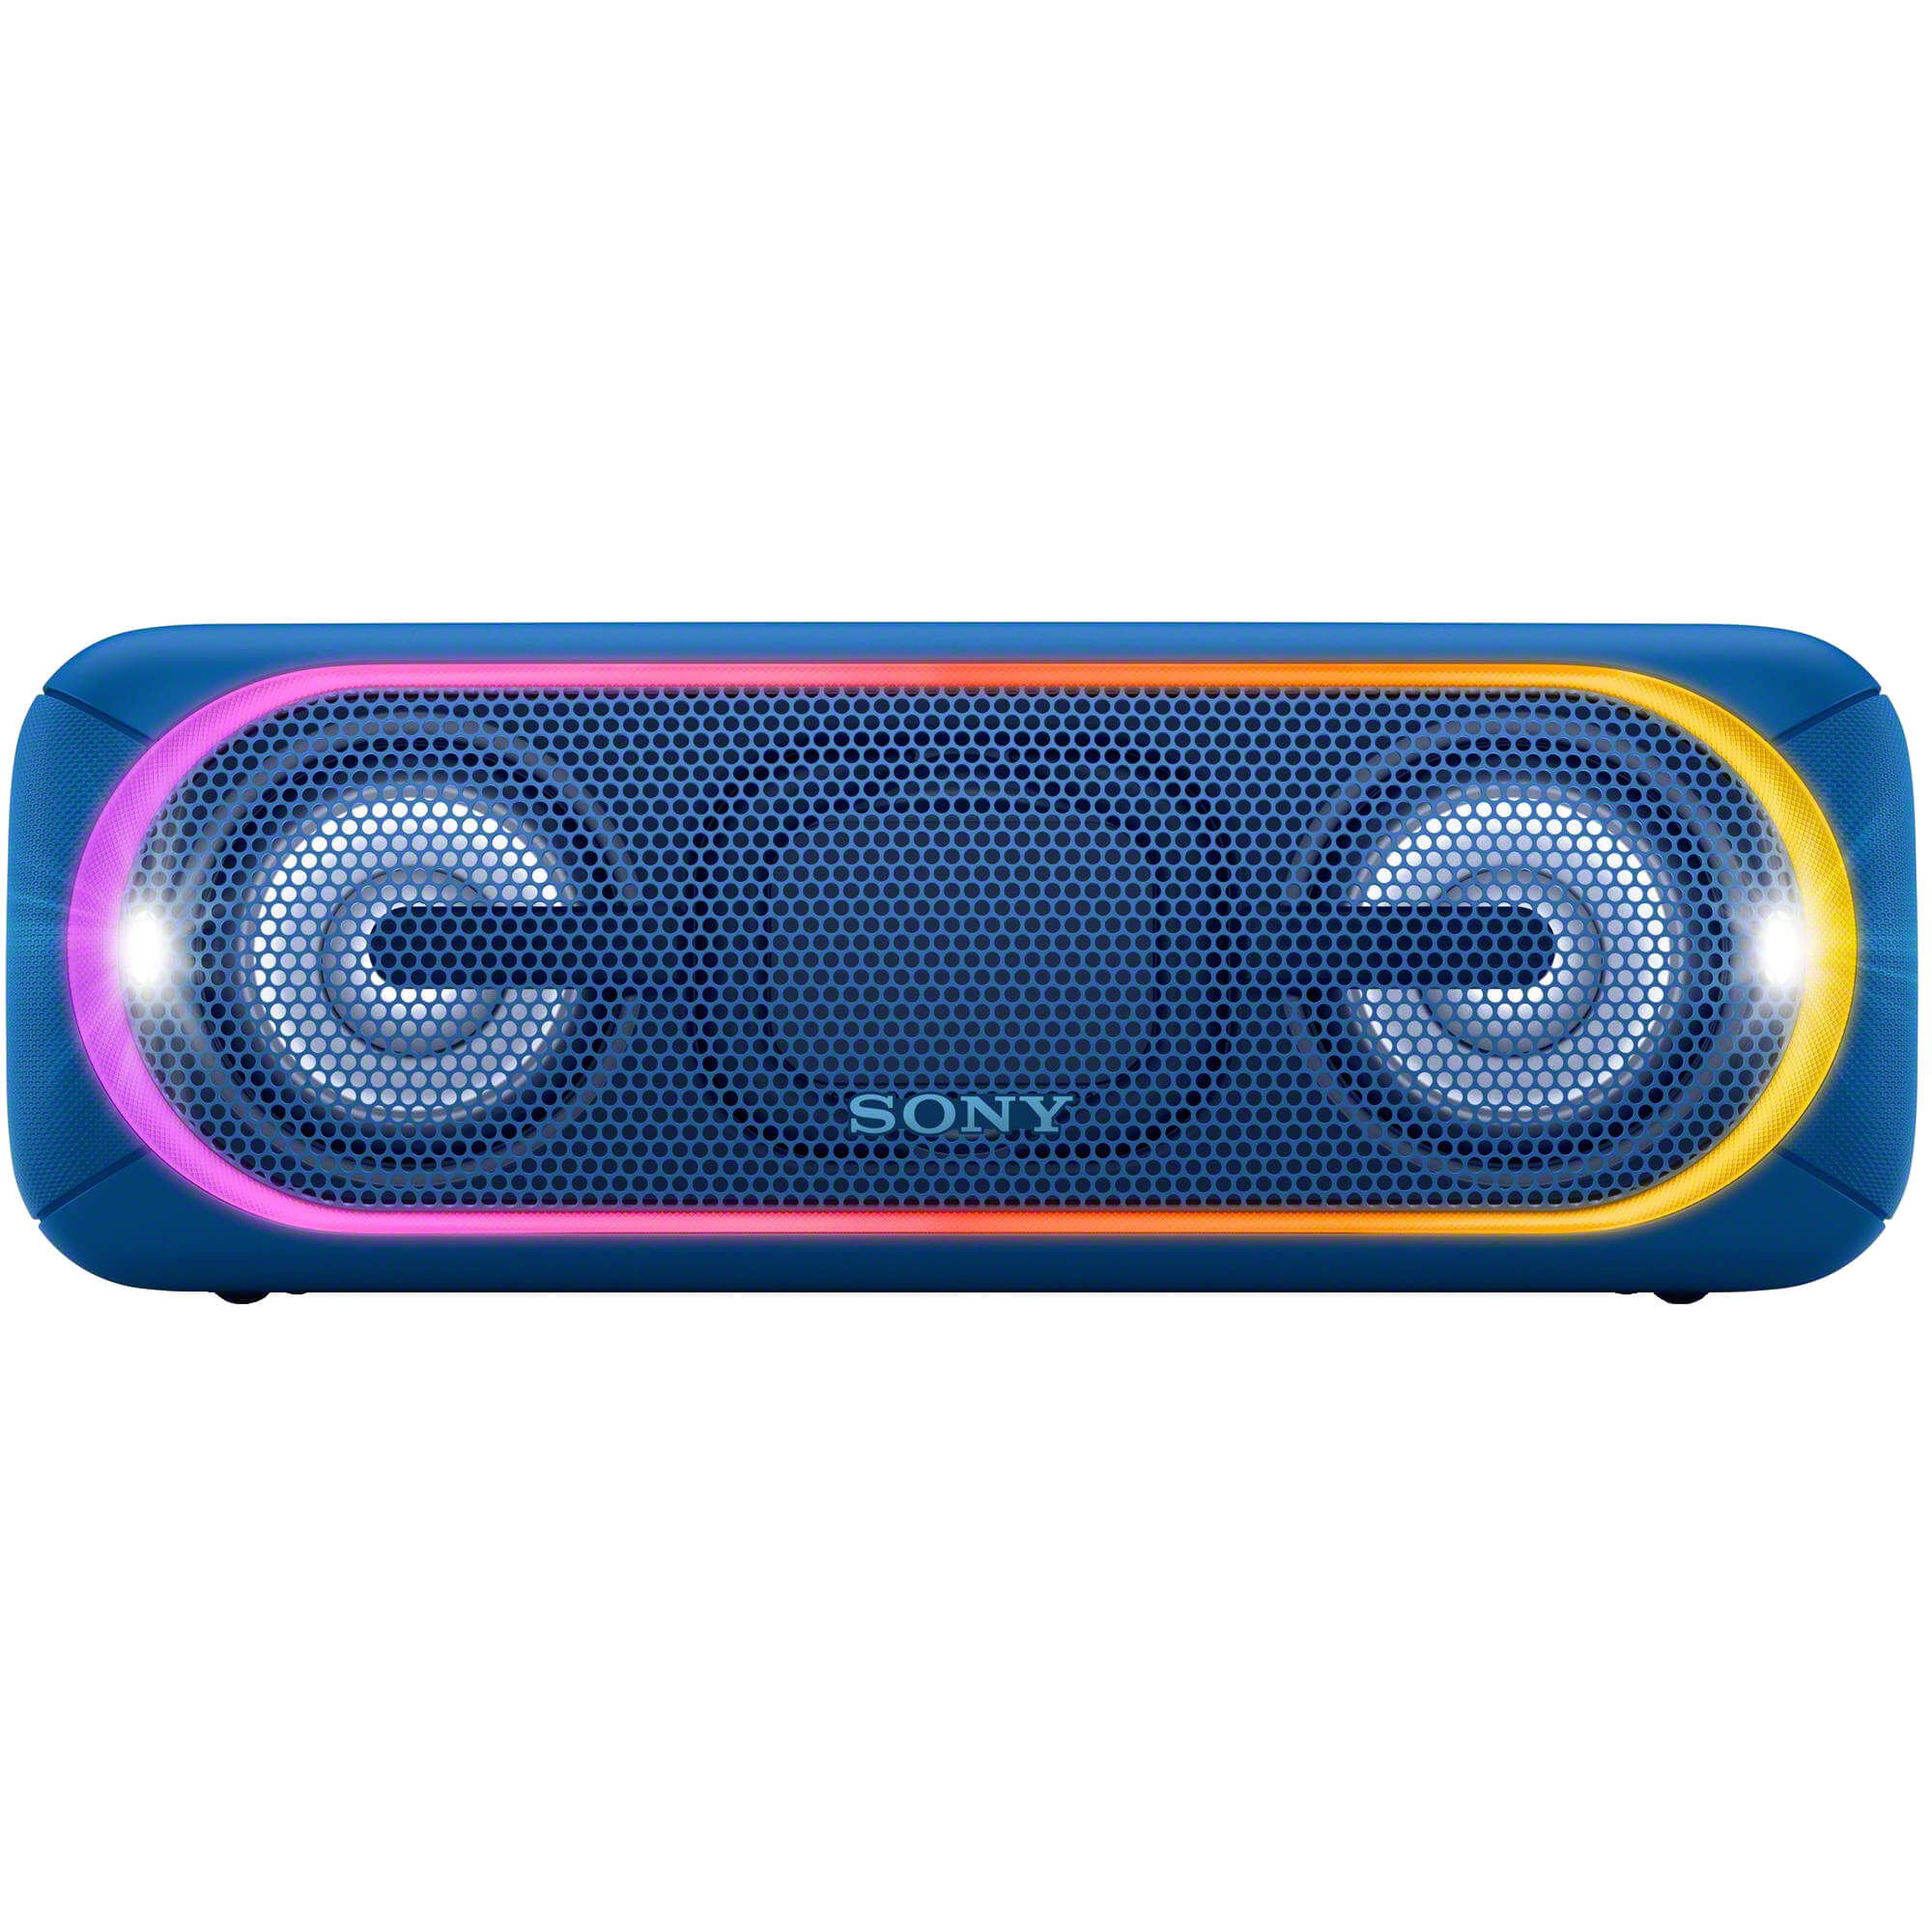  Boxa portabila Sony SRSXB40L.EU8, Bluetooth, Albastru 